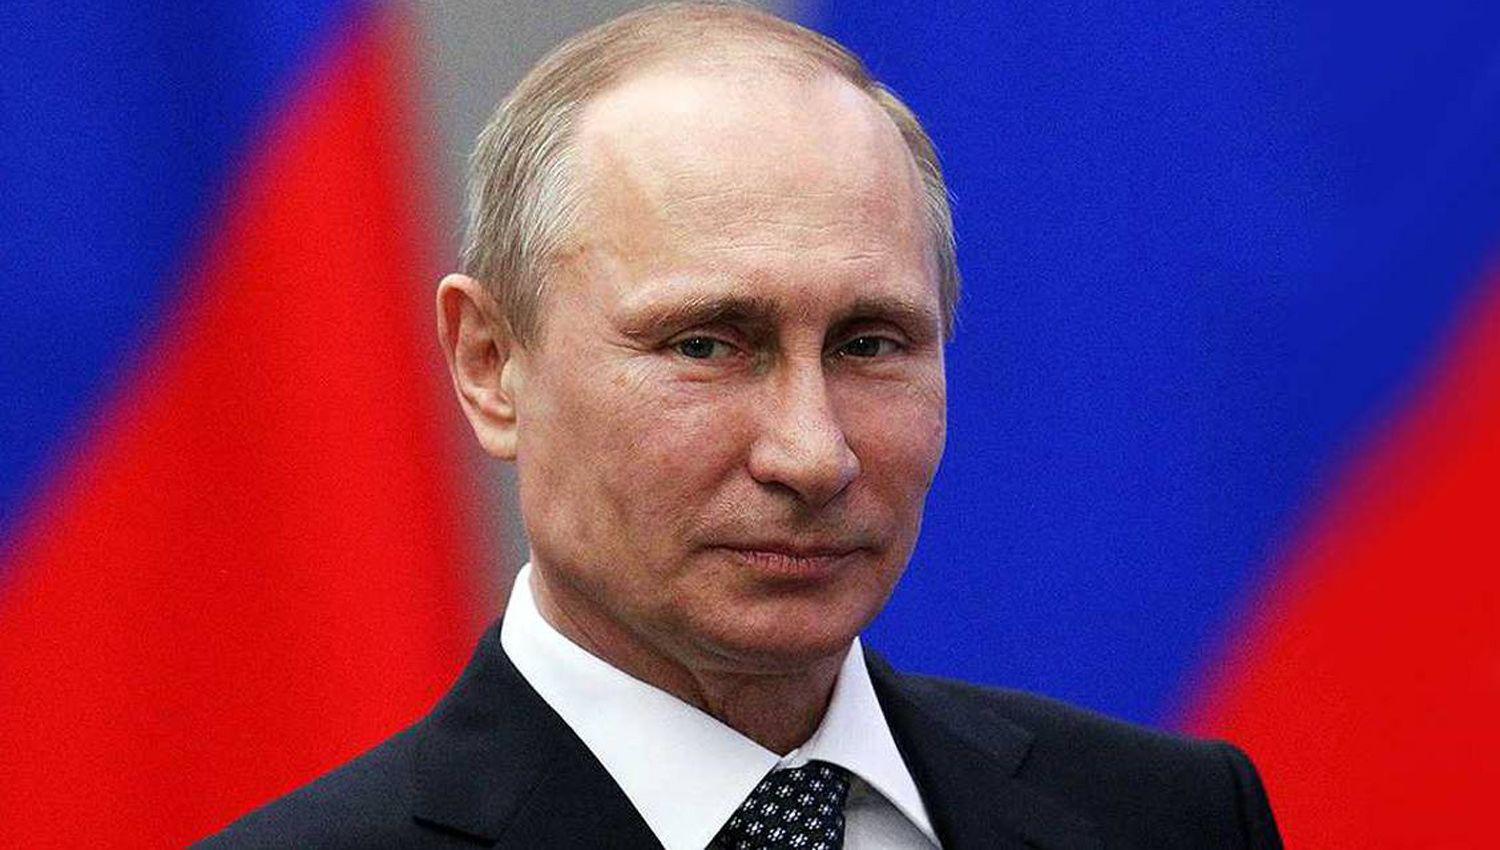 Vladimir Putin recibioacute la segunda dosis de la vacuna contra el coronavirus